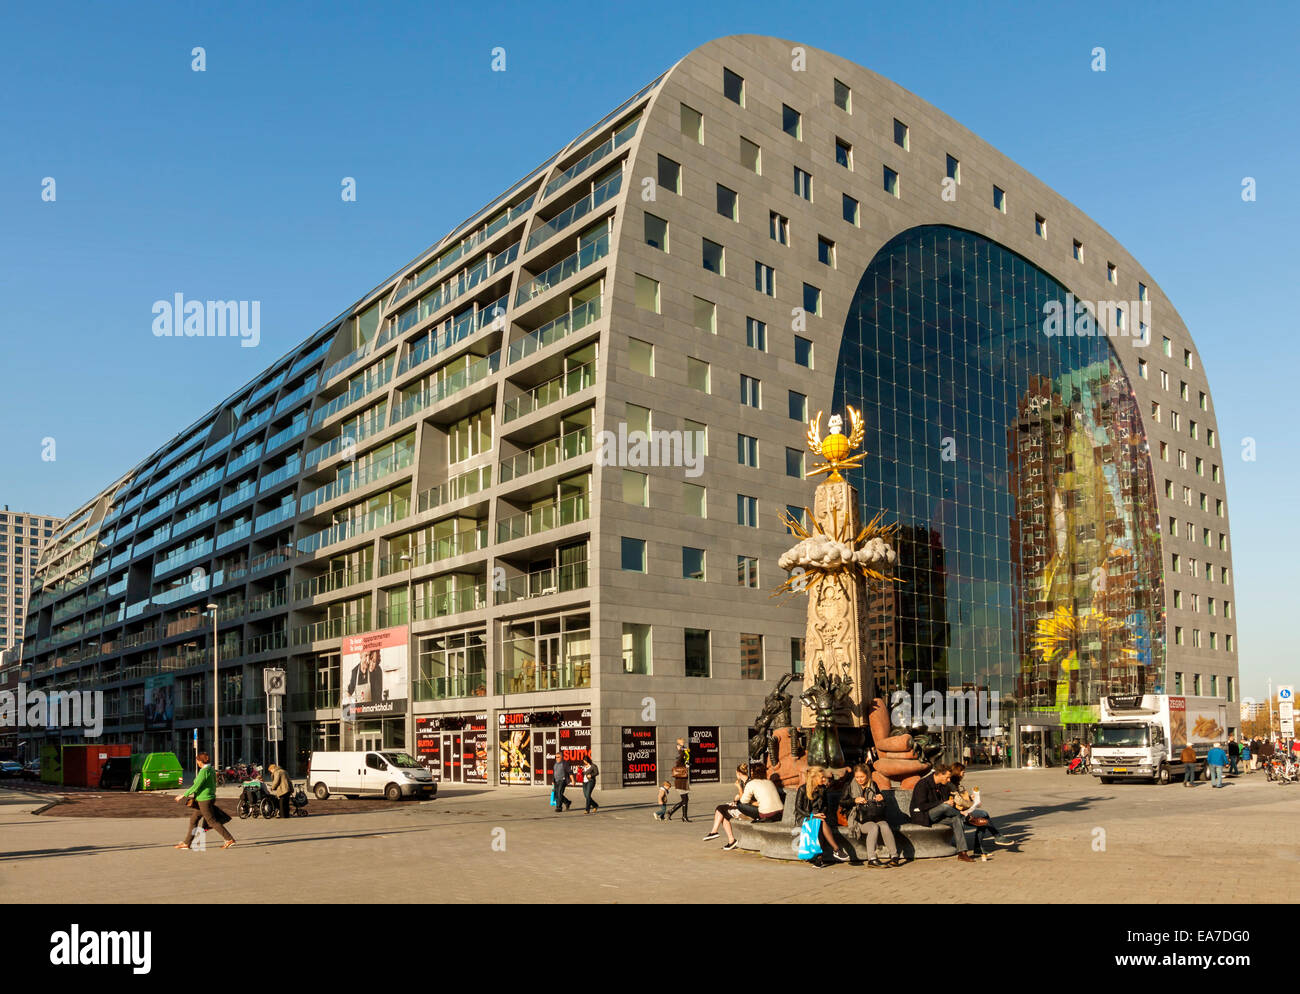 Vue extérieure de la nouvelle halle ou en néerlandais Markthal Rotterdam À Rotterdam, Hollande méridionale, Pays-Bas. Banque D'Images